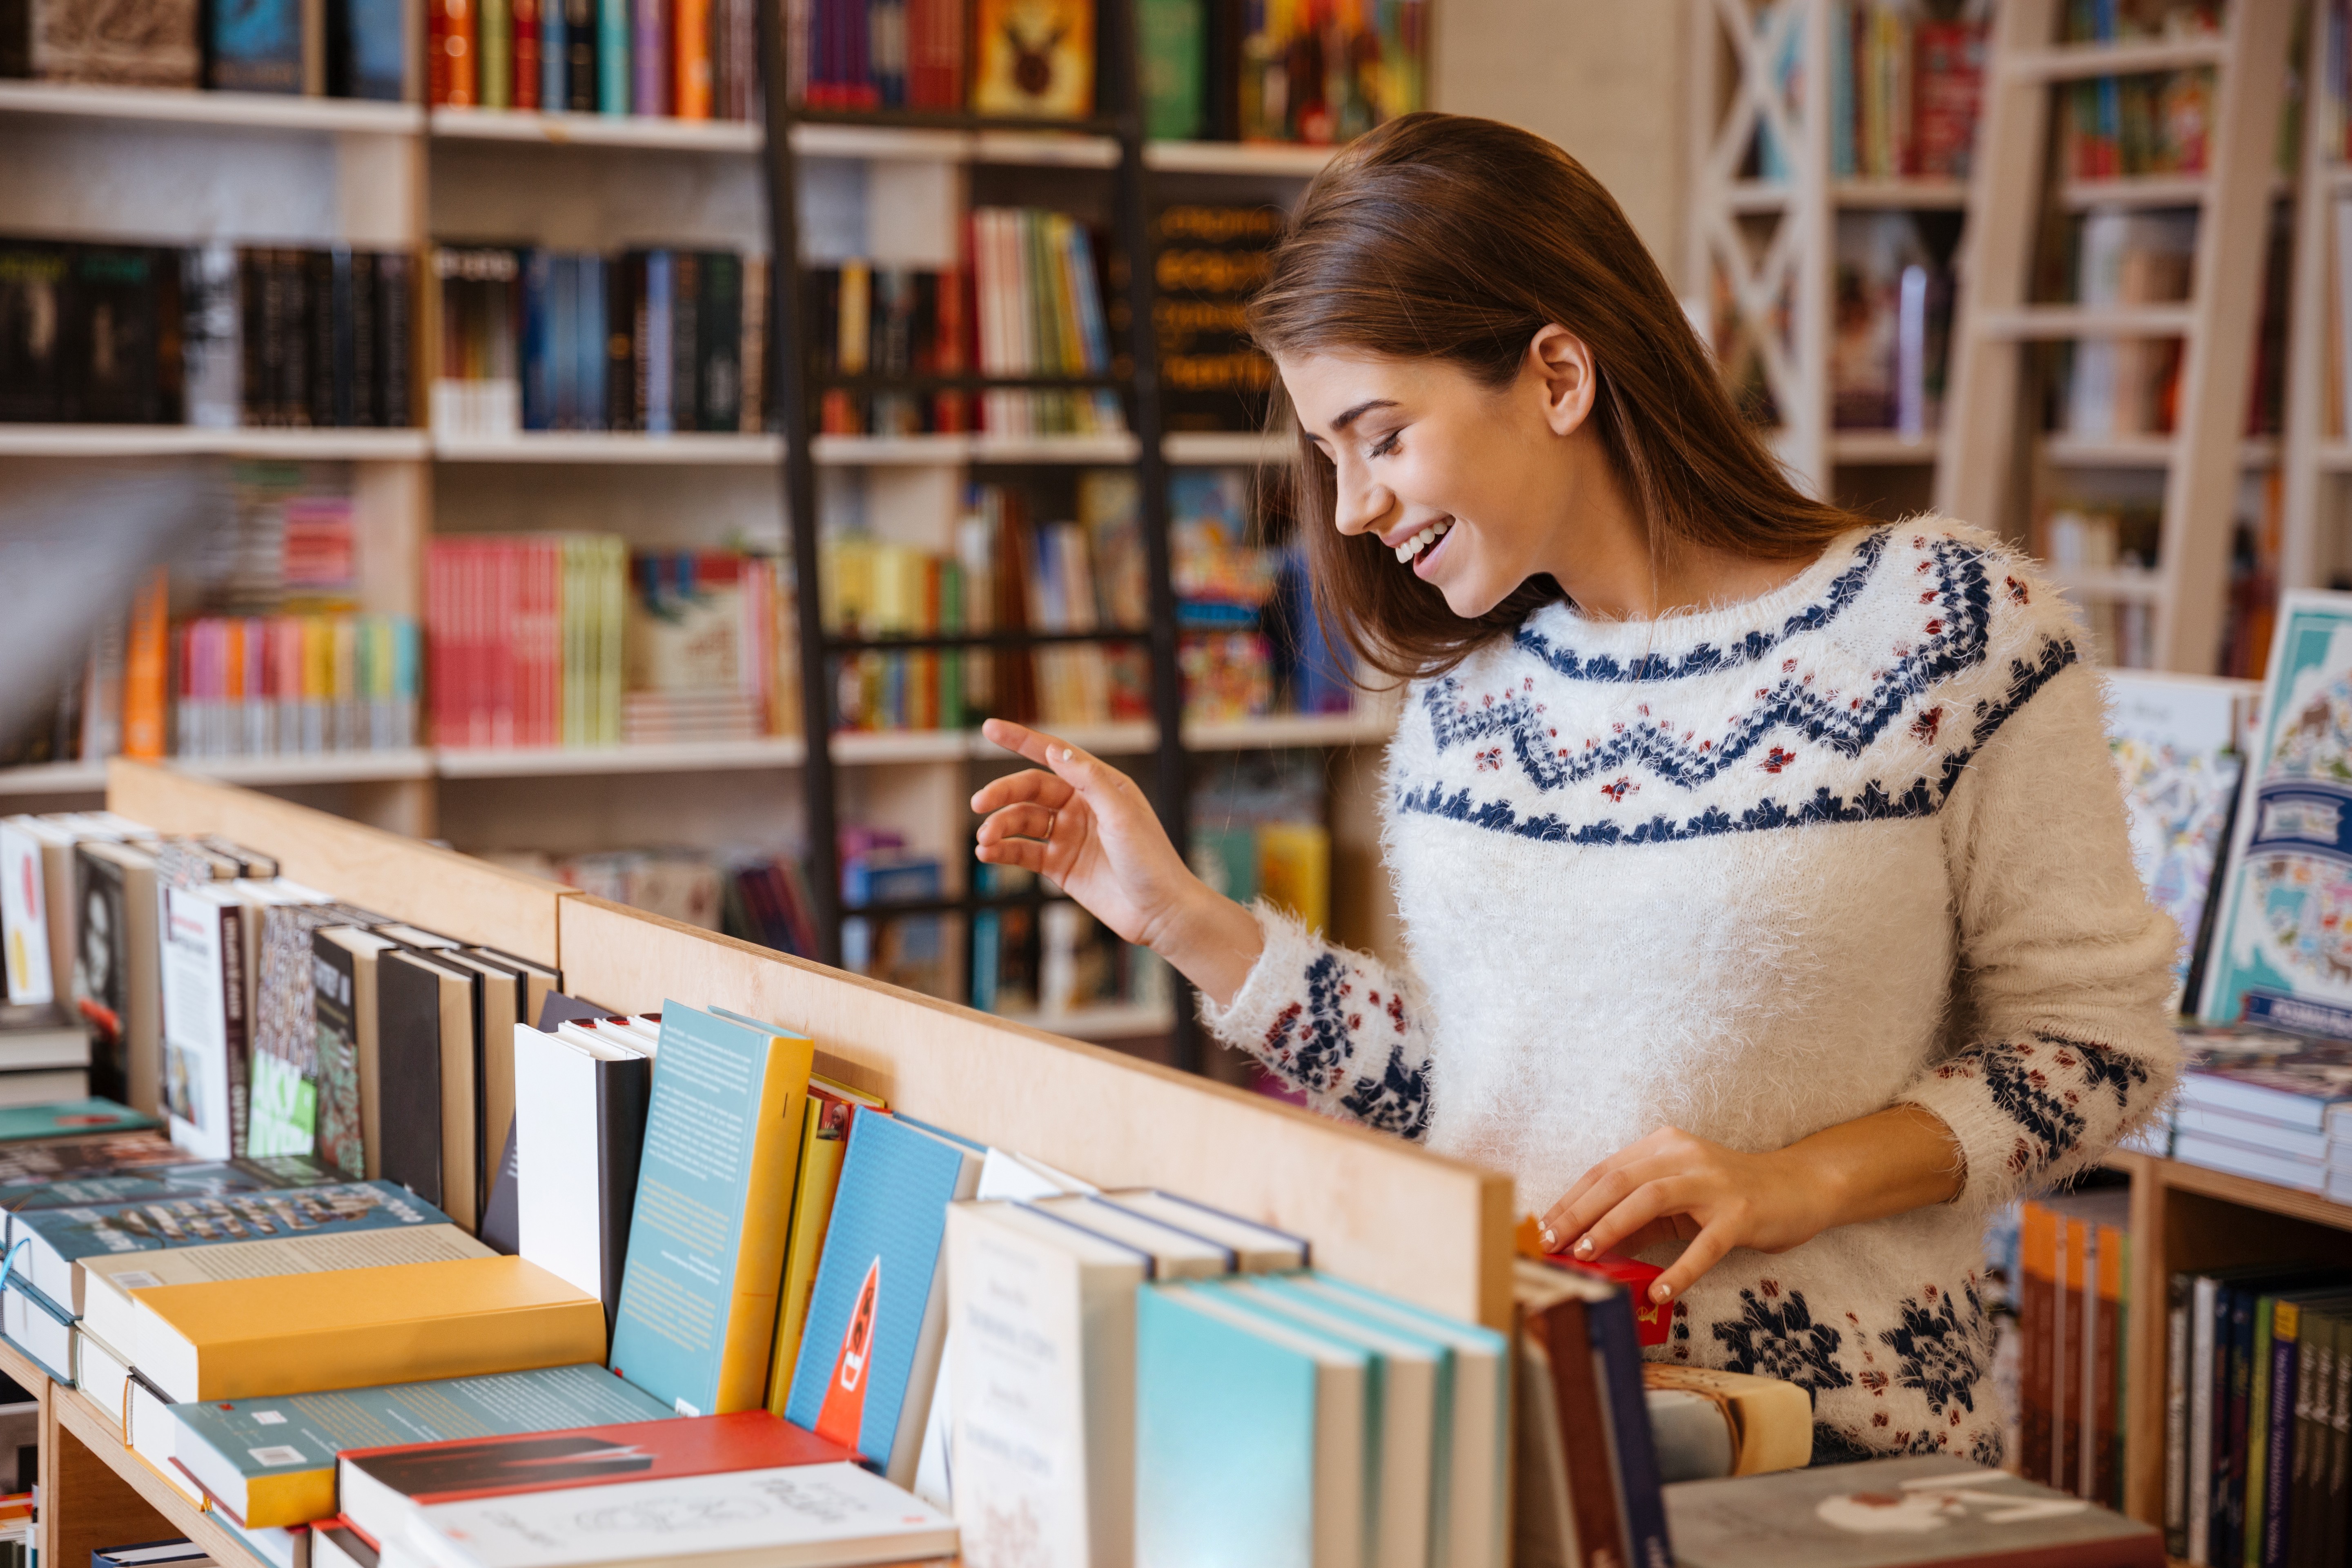 Заказать справочники. Человек выбирает книги в магазине. Девочка в книжном магазине. Книжный магазин картинки. Покупатели в книжном магазине.